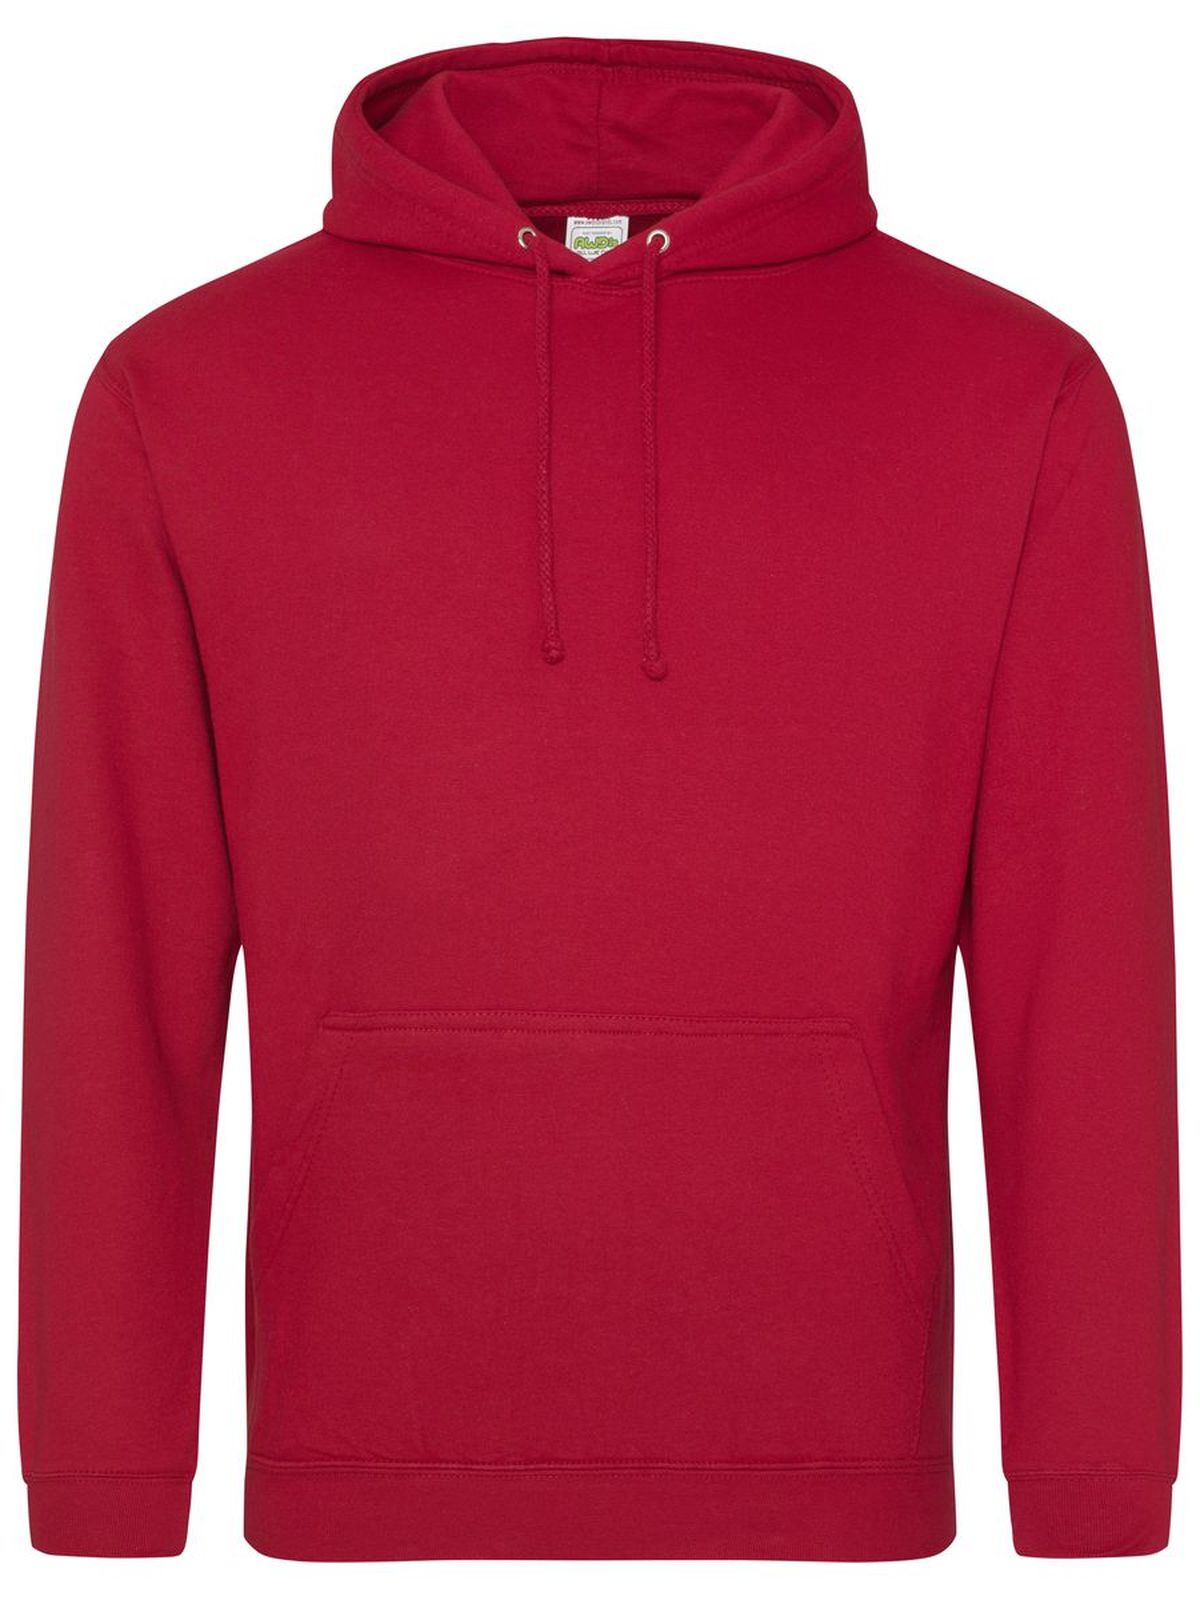 college-hoodie-fire-red.webp